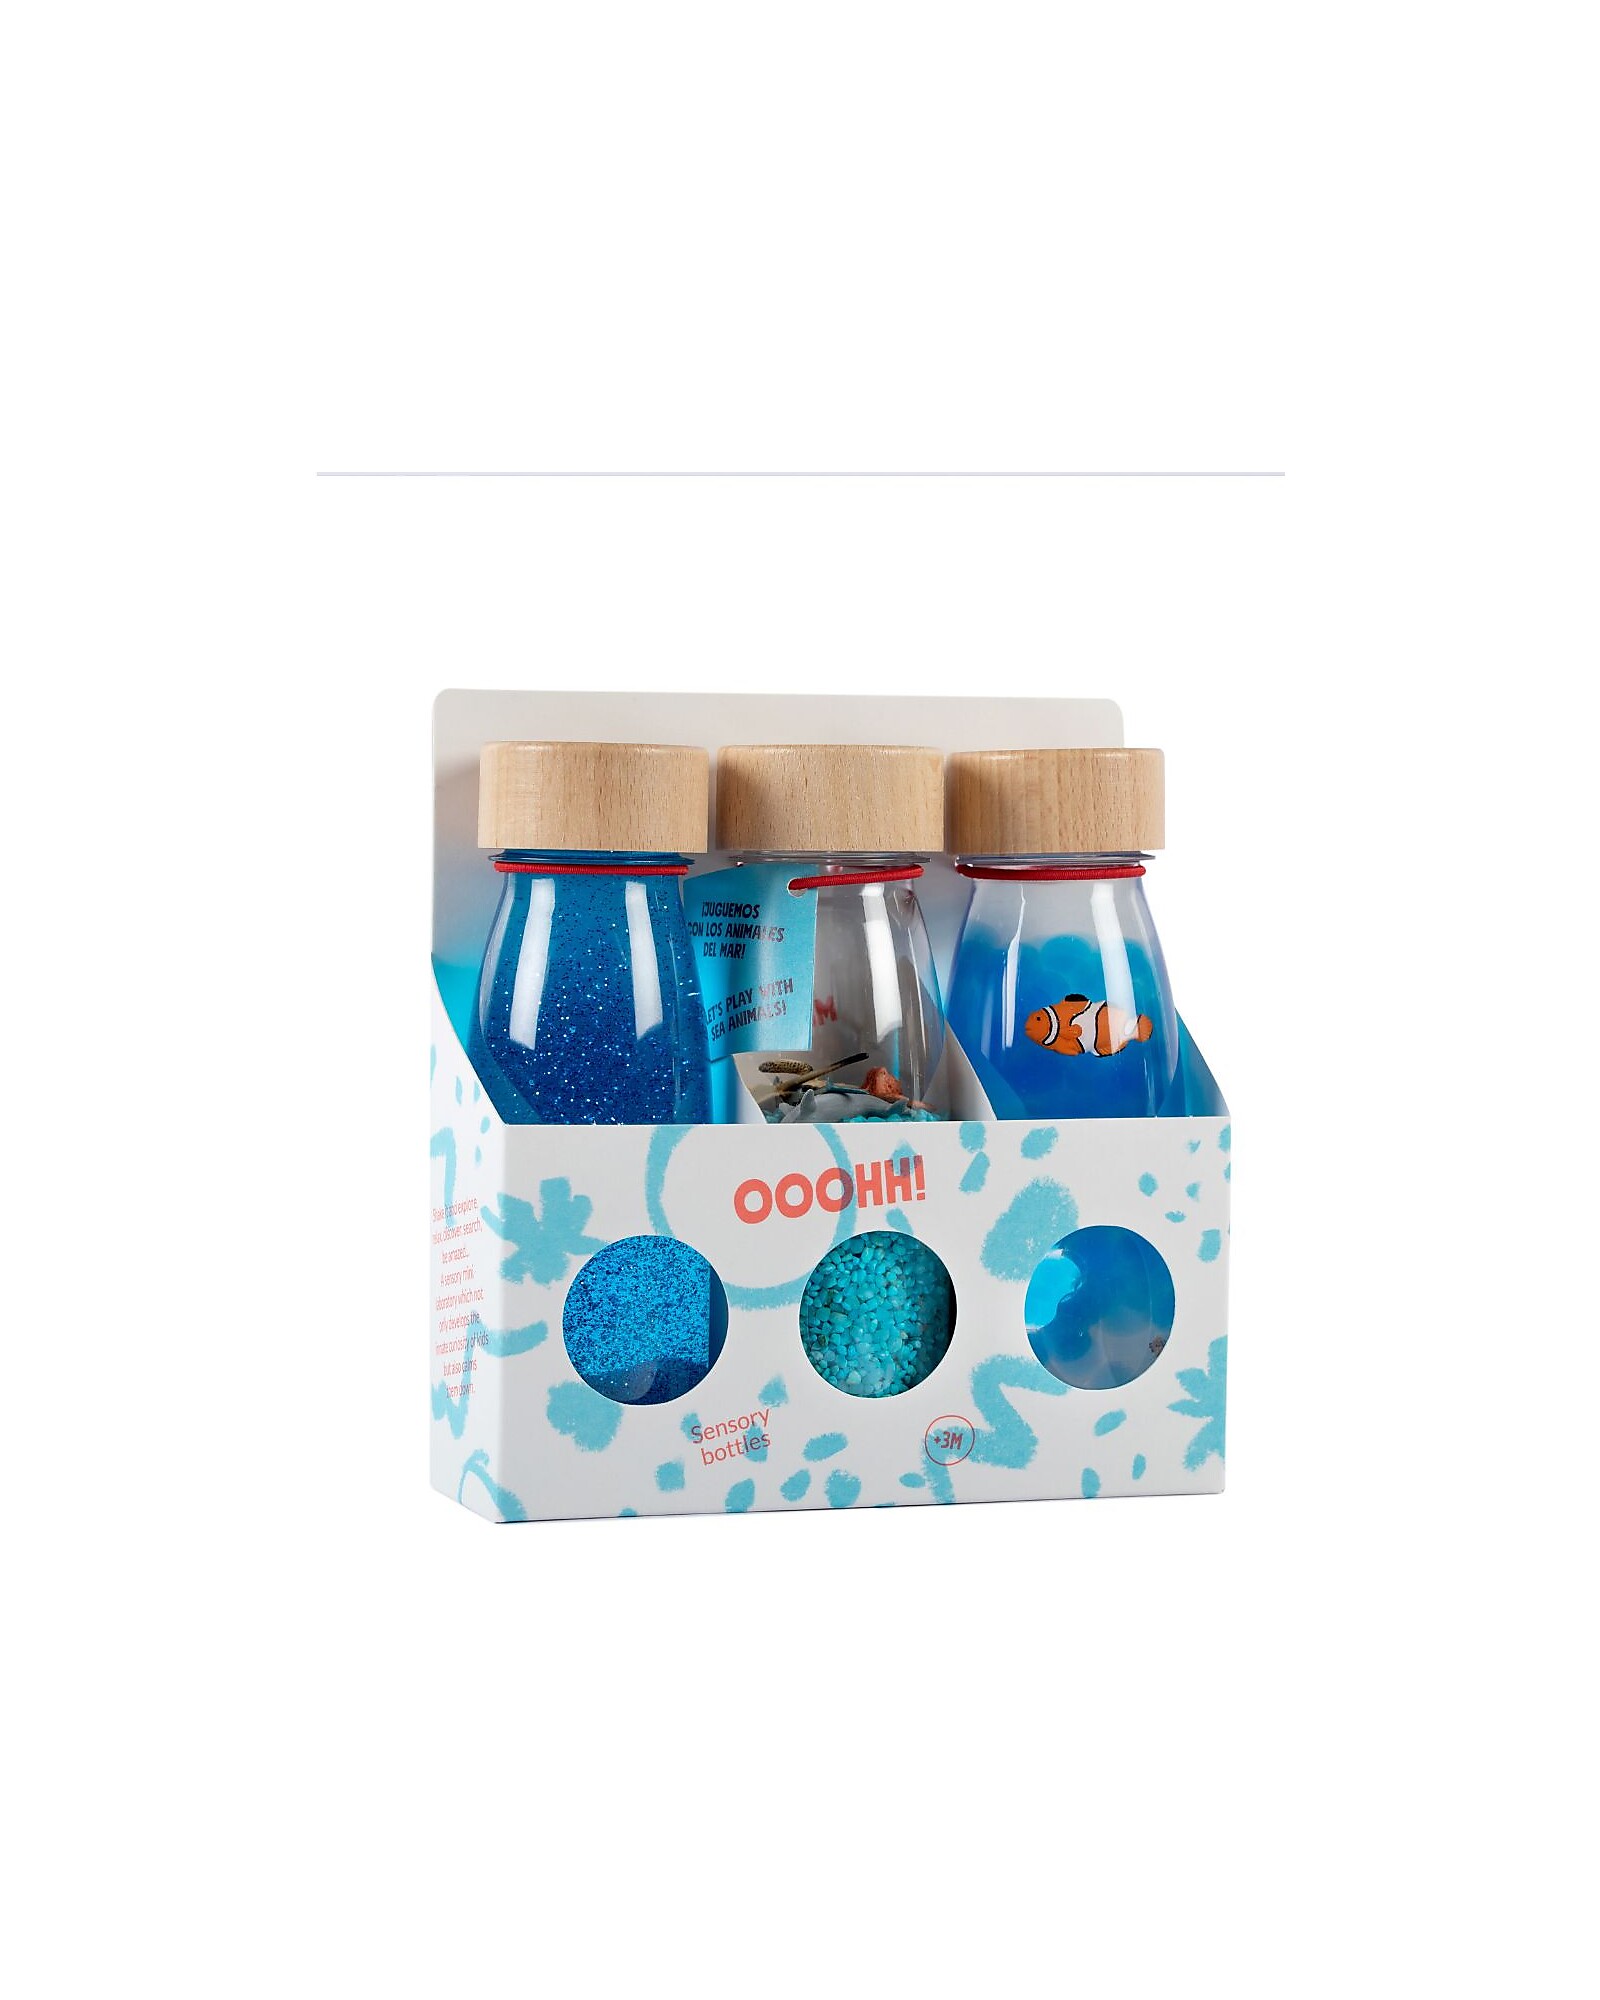 Bottigliette sensoriali: attività per bambini dai 6 mesi - BabyTips